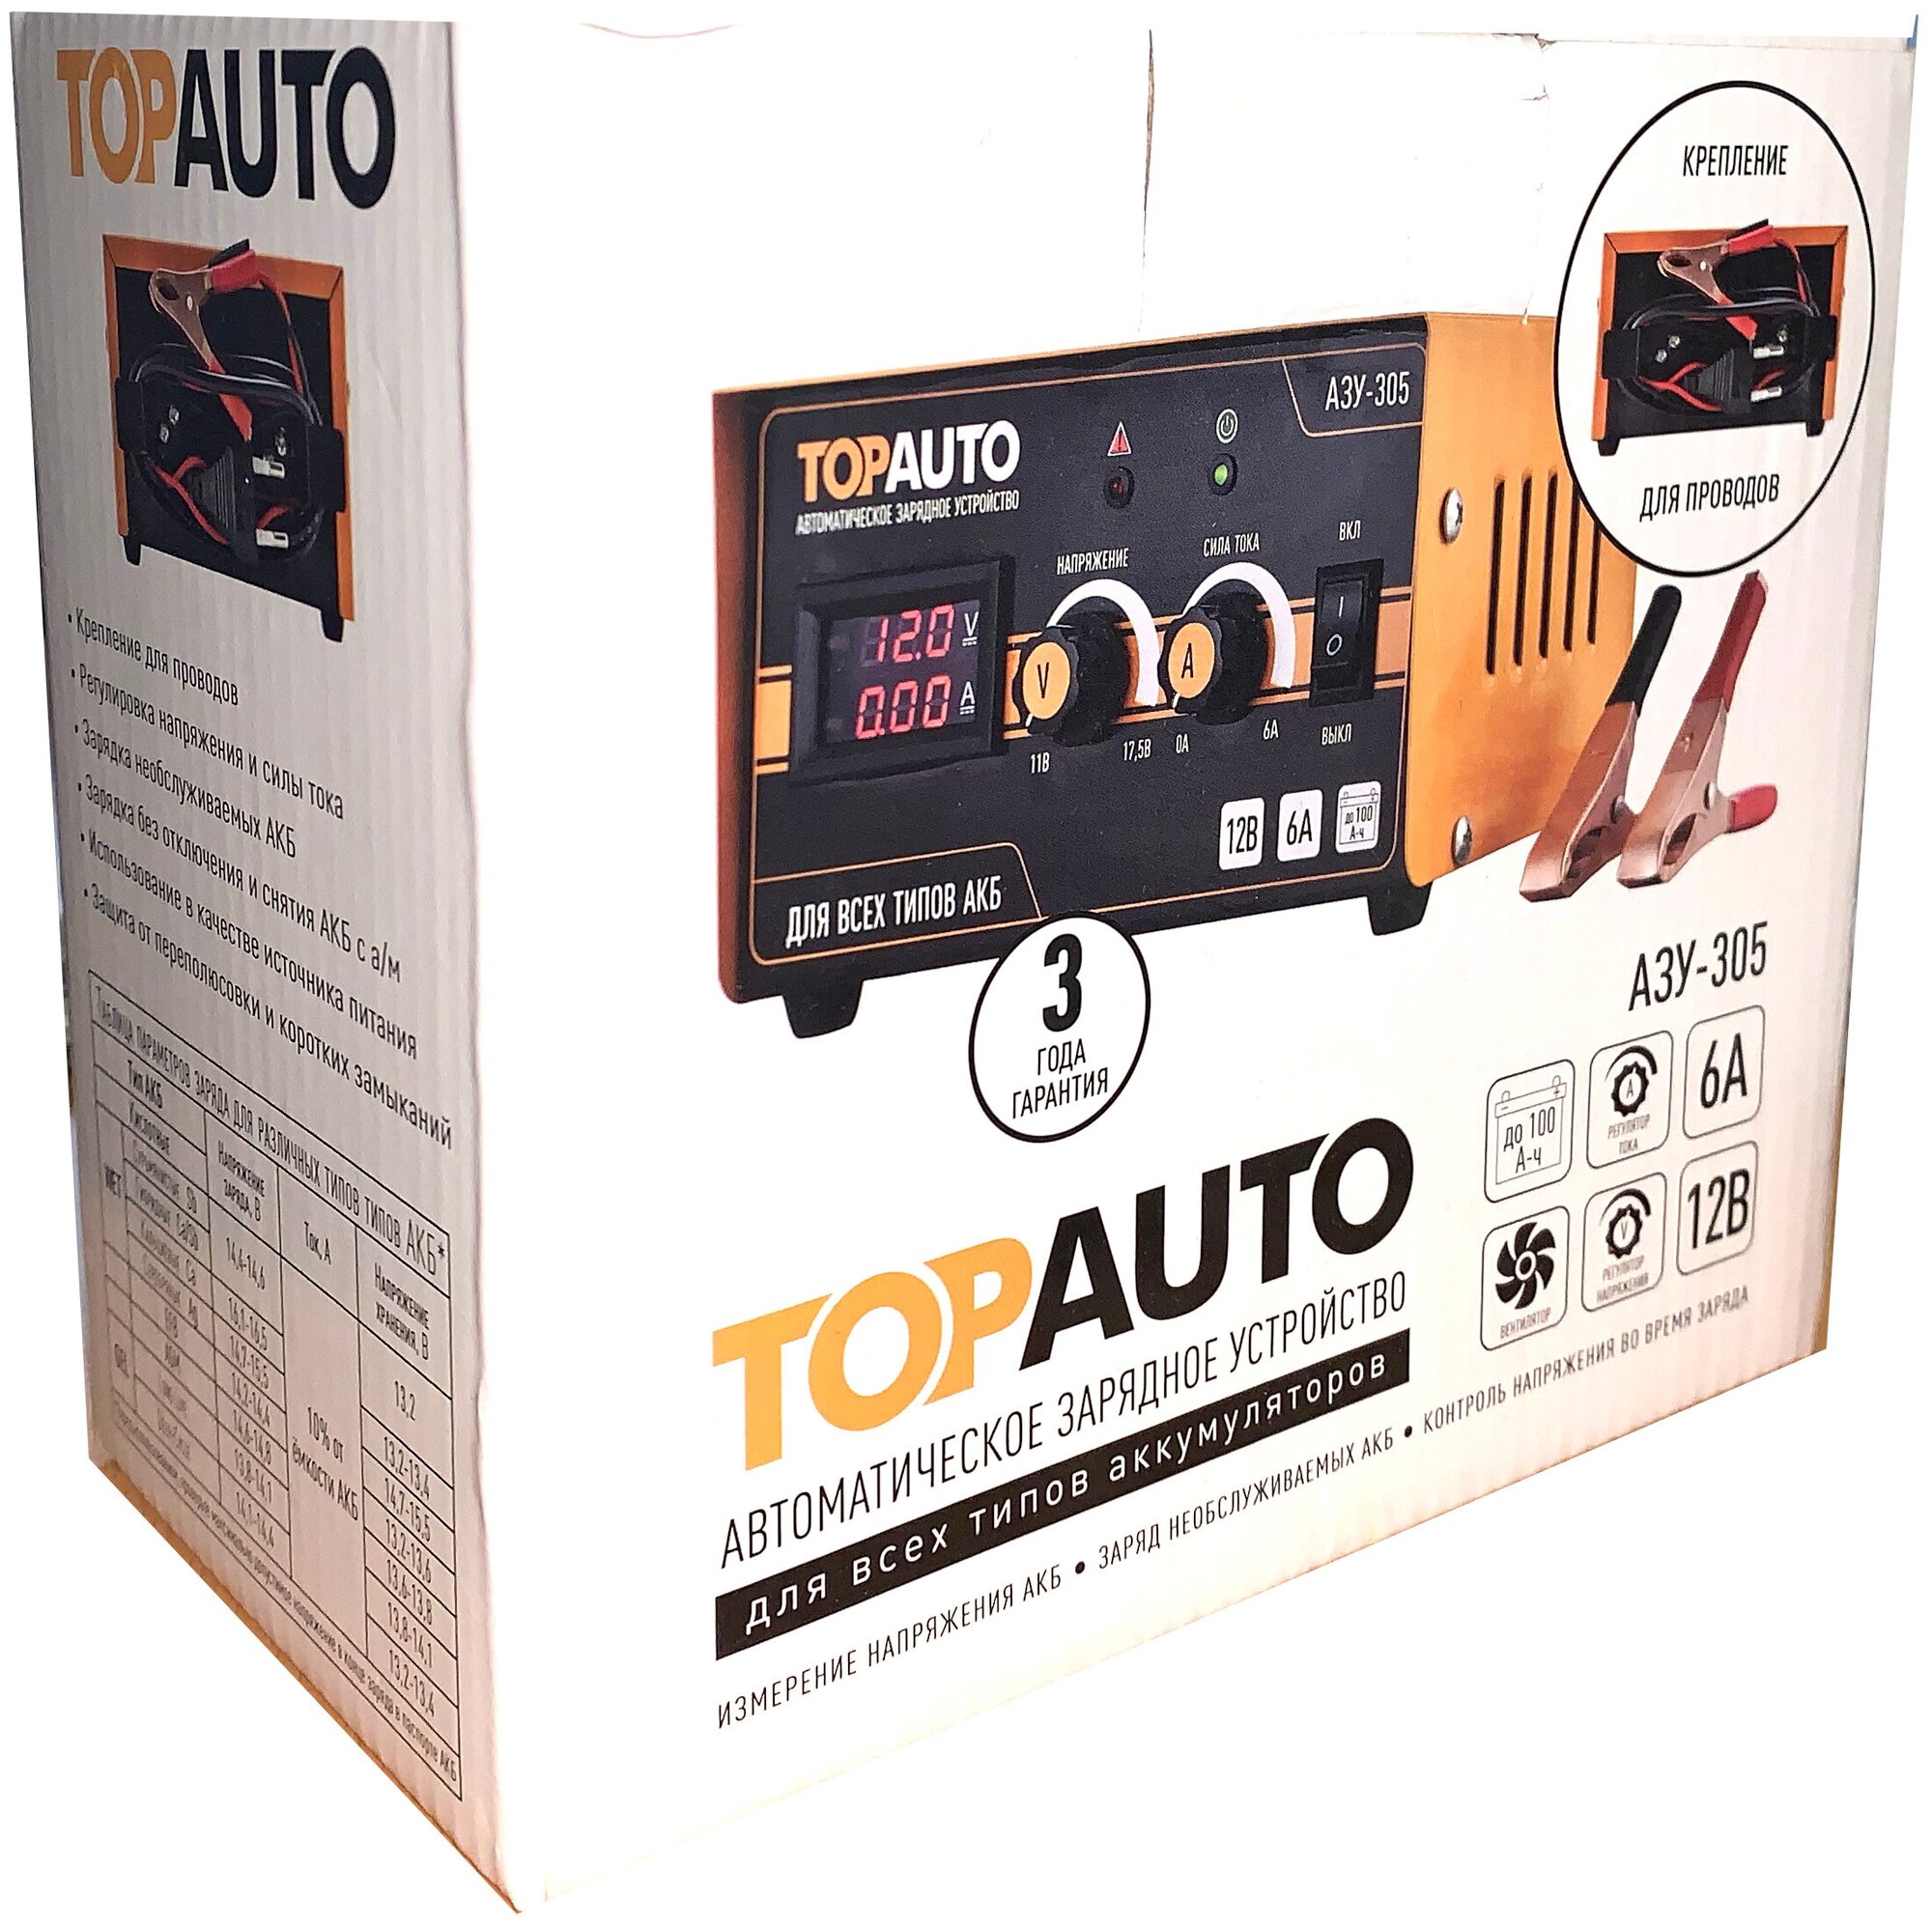 Автоматическое зарядное устройство TopAuto ТОП АВТО - фото №3